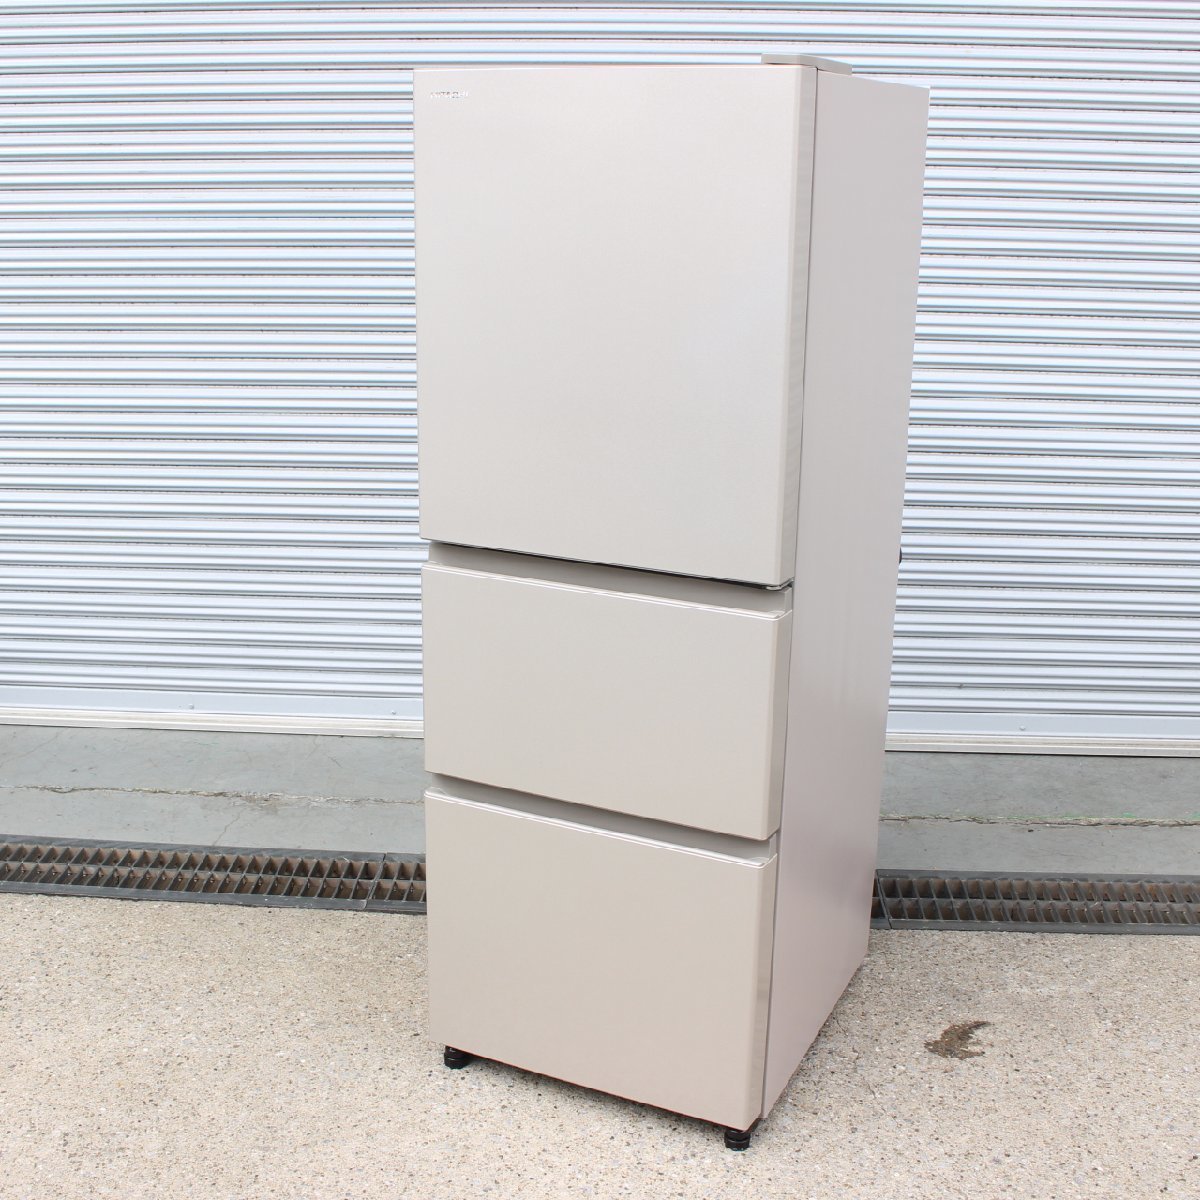 川崎市宮前区にて 日立  ノンフロン冷凍冷蔵庫  R-27KV(T) 2019年製 を出張買取させて頂きました。